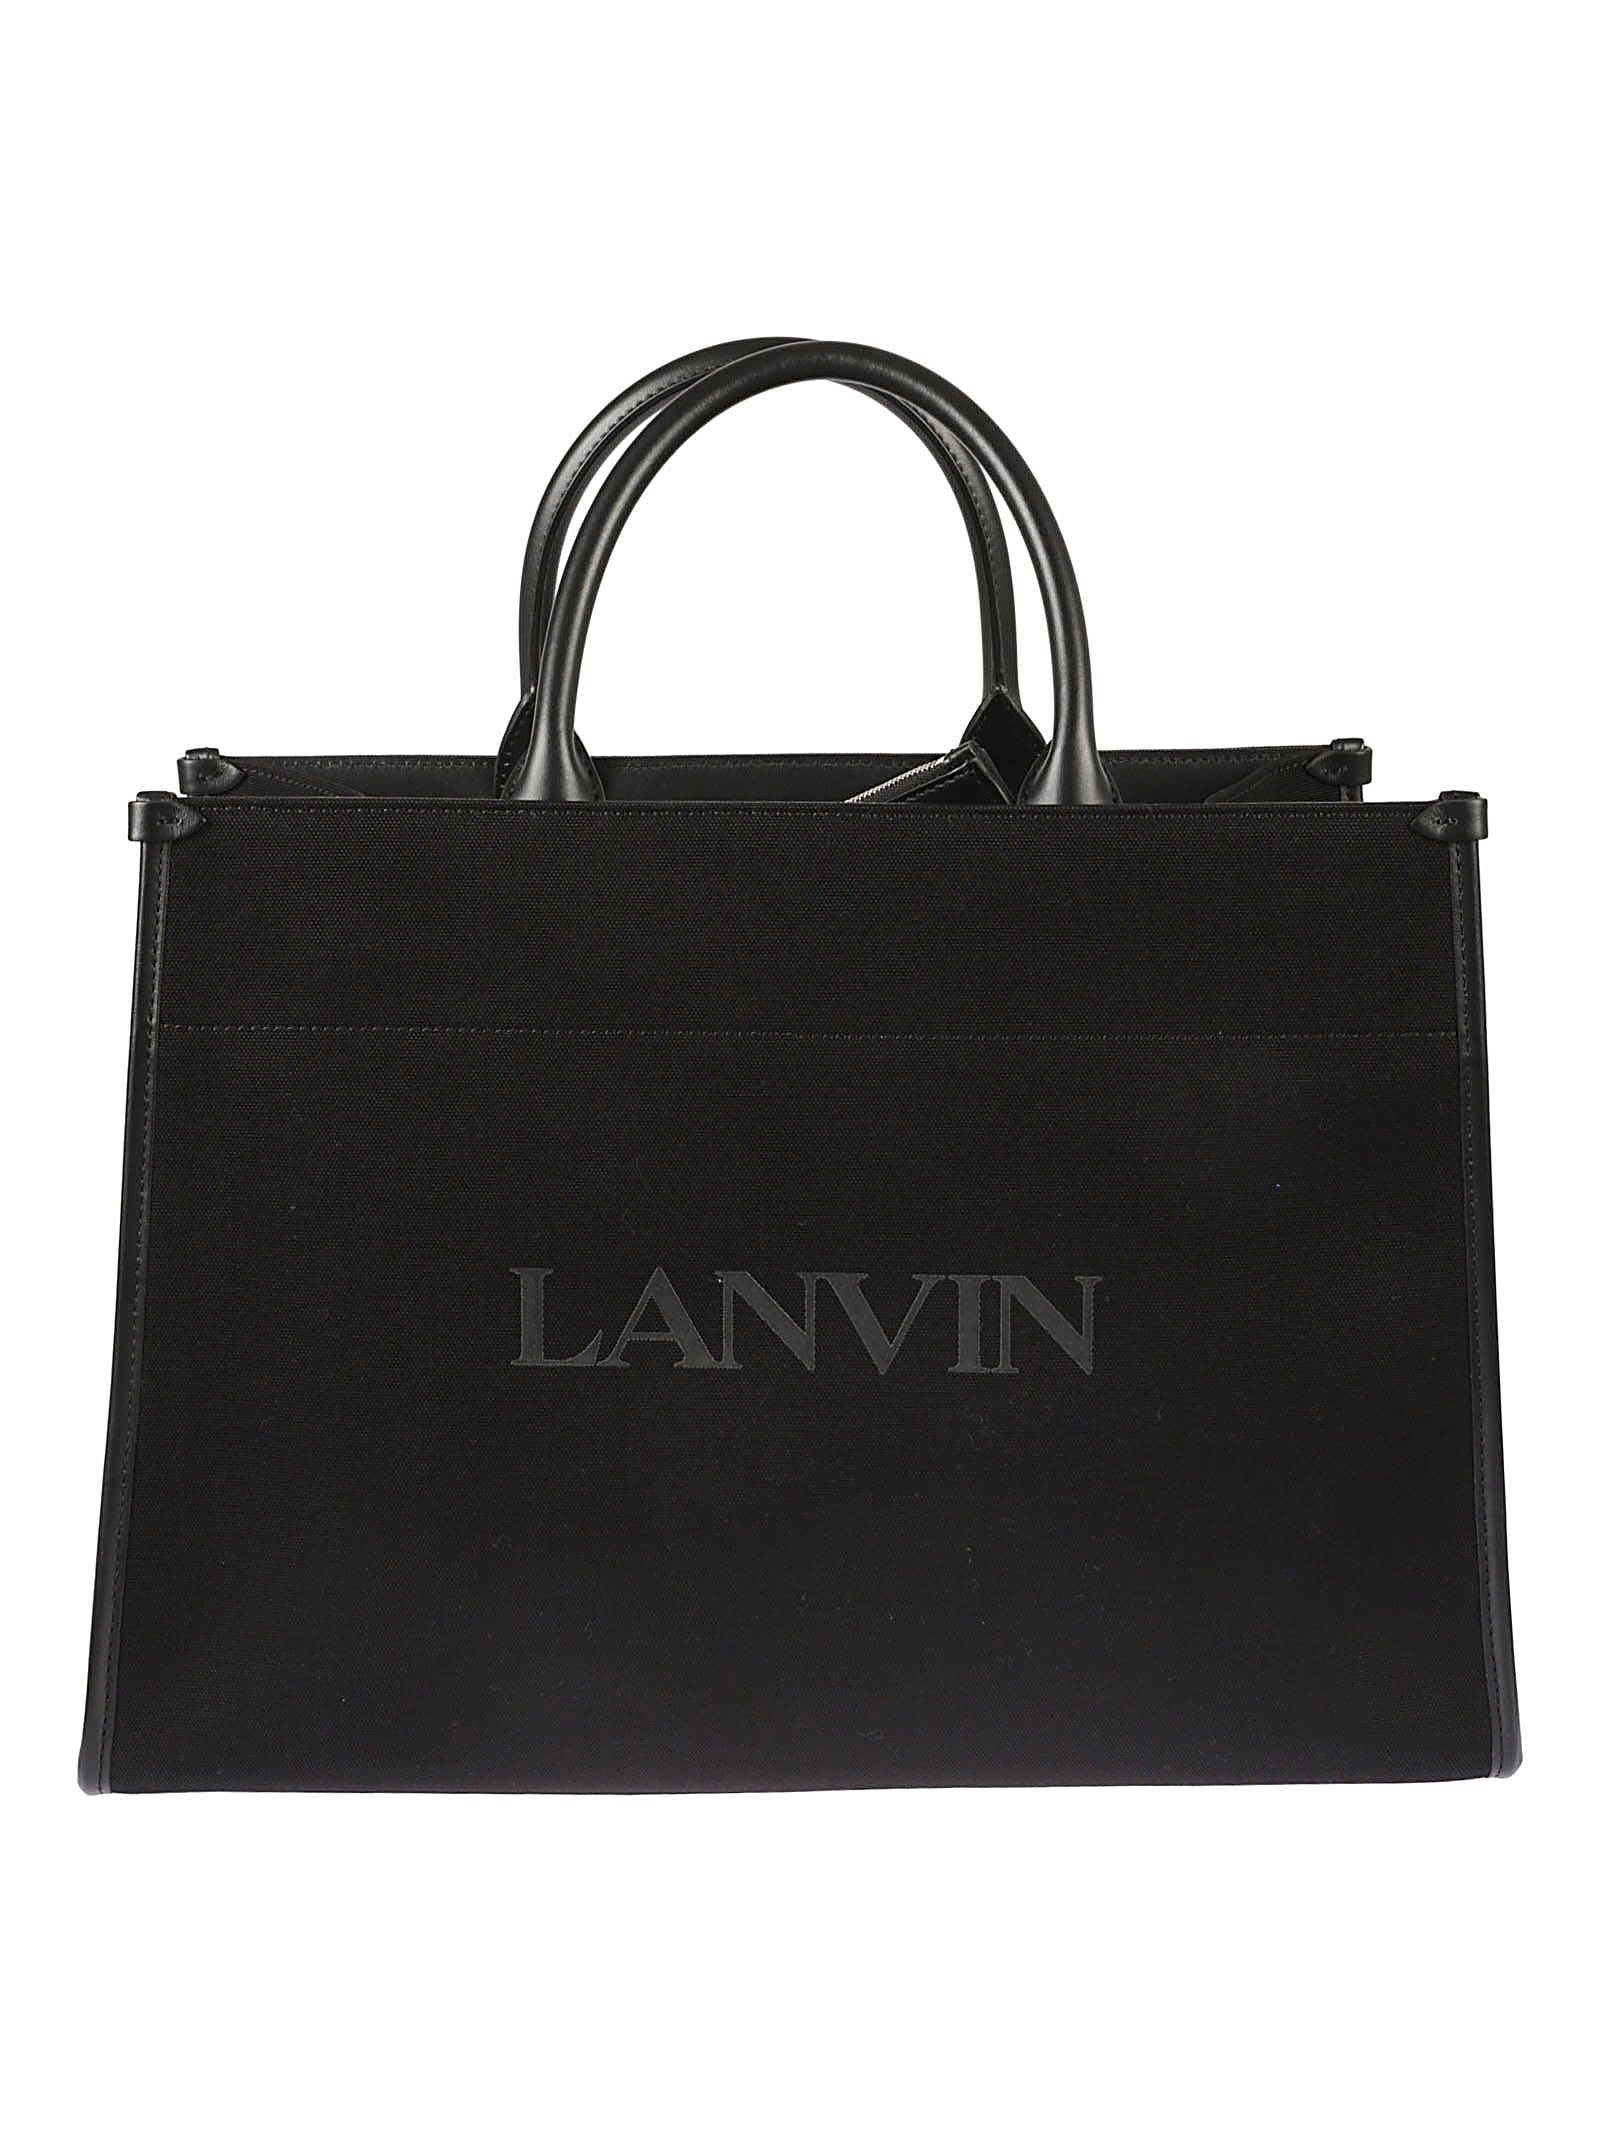 Lanvin Logo Detail Tote